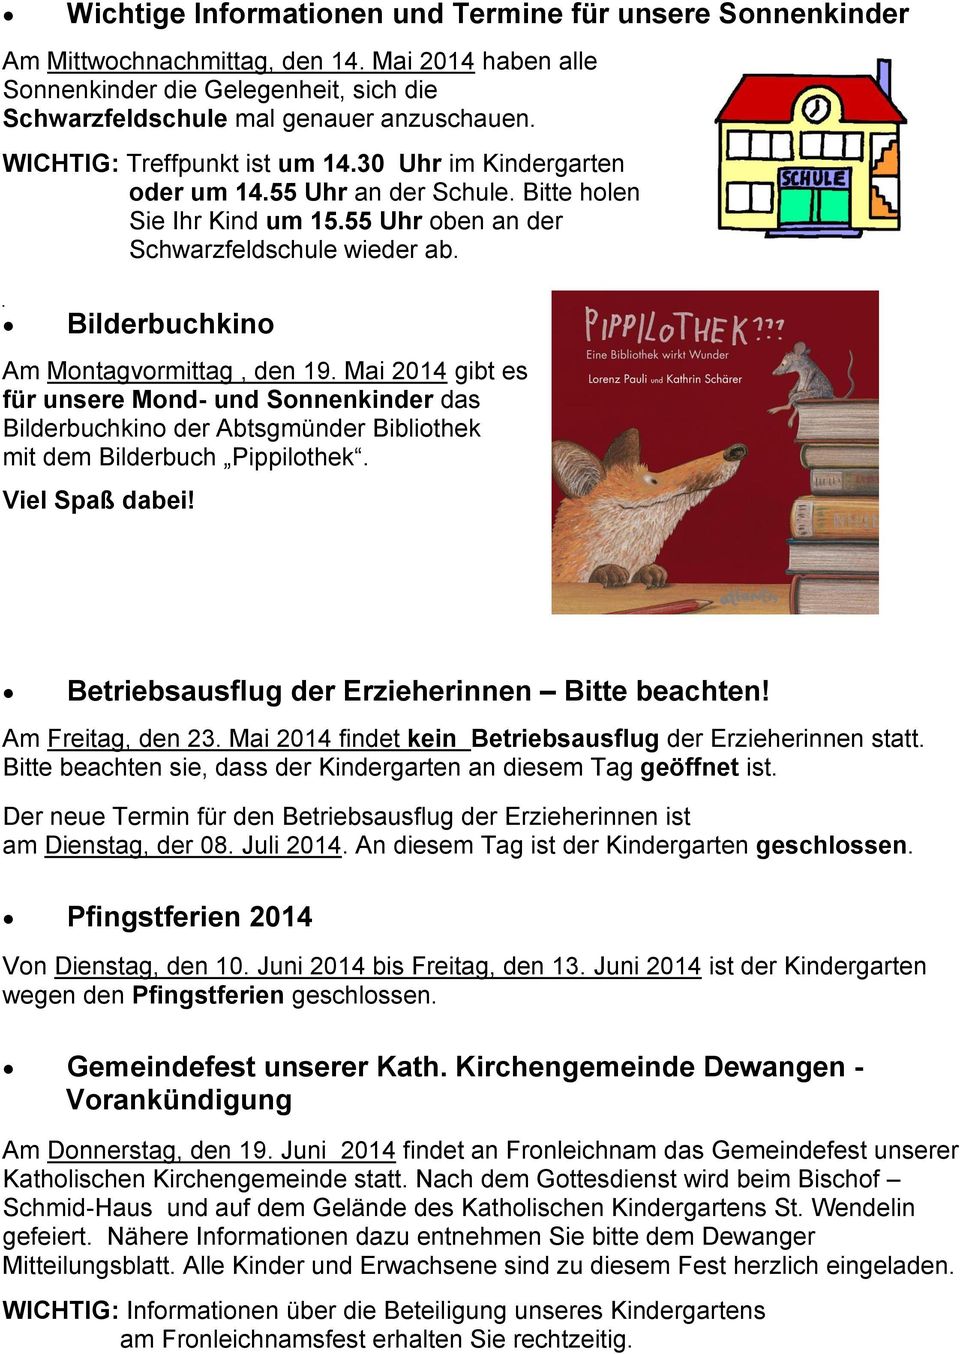 Bilderbuchkino Am Montagvormittag, den 19. Mai 2014 gibt es für unsere Mond- und Sonnenkinder das Bilderbuchkino der Abtsgmünder Bibliothek mit dem Bilderbuch Pippilothek. Viel Spaß dabei!